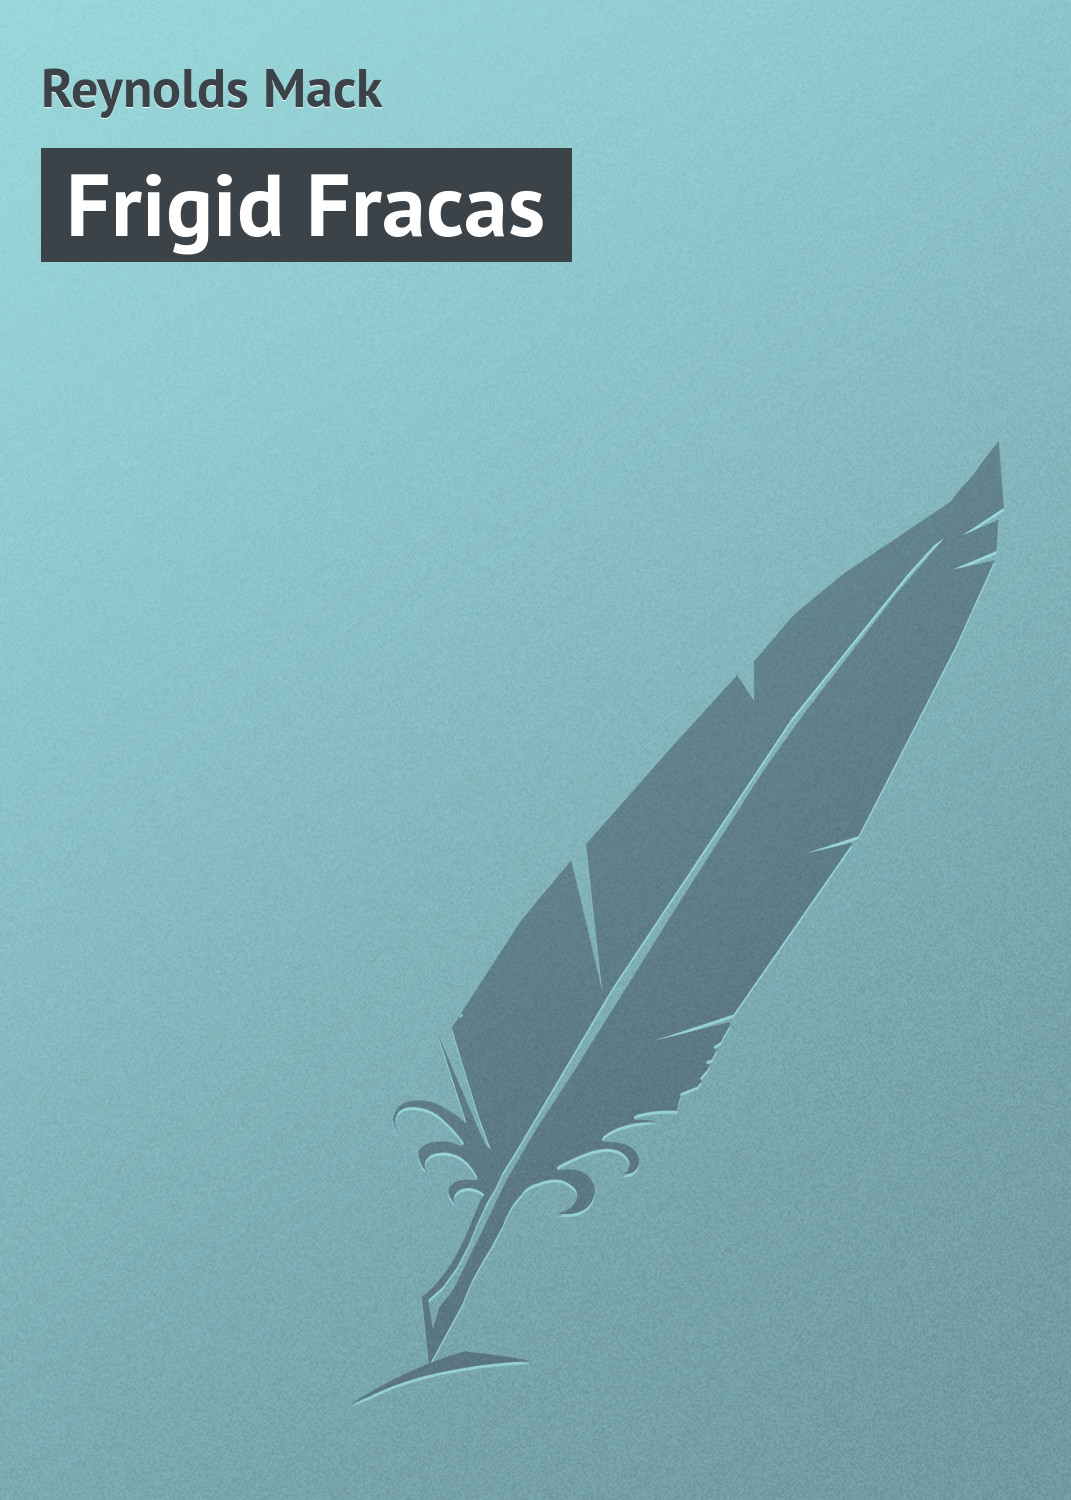 Книга Frigid Fracas из серии , созданная Mack Reynolds, может относится к жанру Зарубежная классика. Стоимость электронной книги Frigid Fracas с идентификатором 23160275 составляет 5.99 руб.